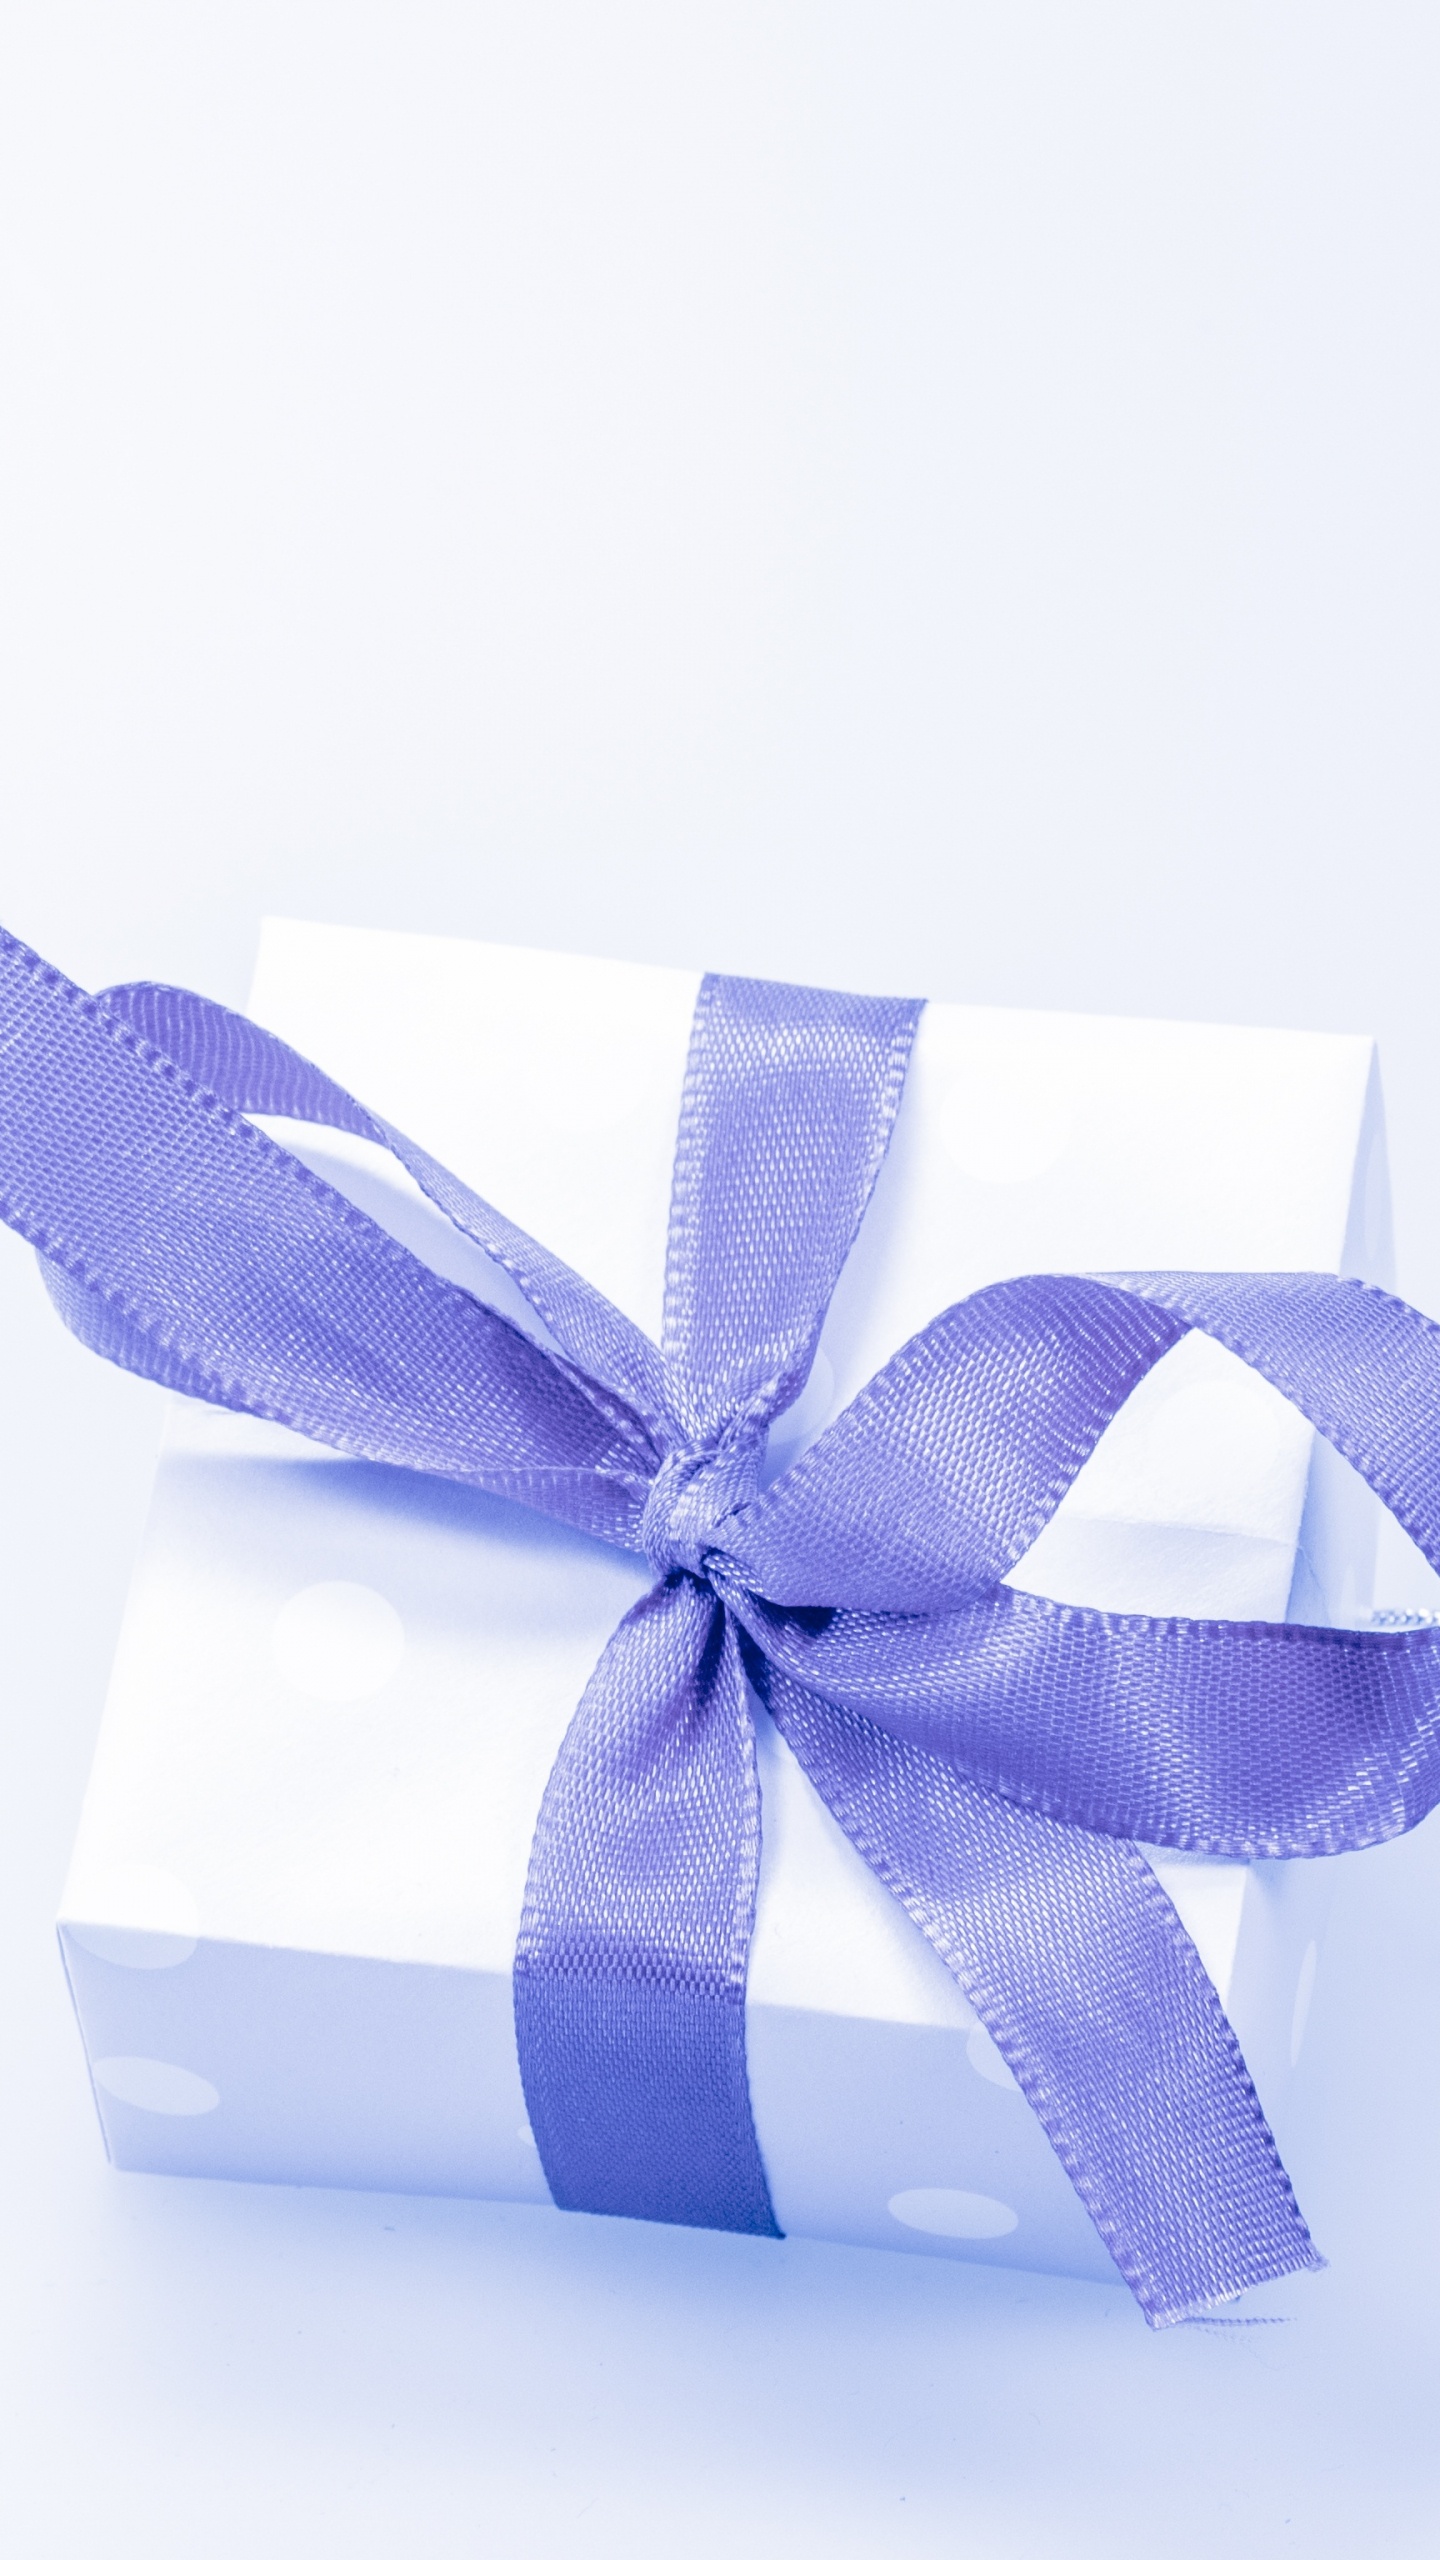 礼物, 礼品卡, 礼品包装, 丝带, 紫罗兰色 壁纸 1440x2560 允许